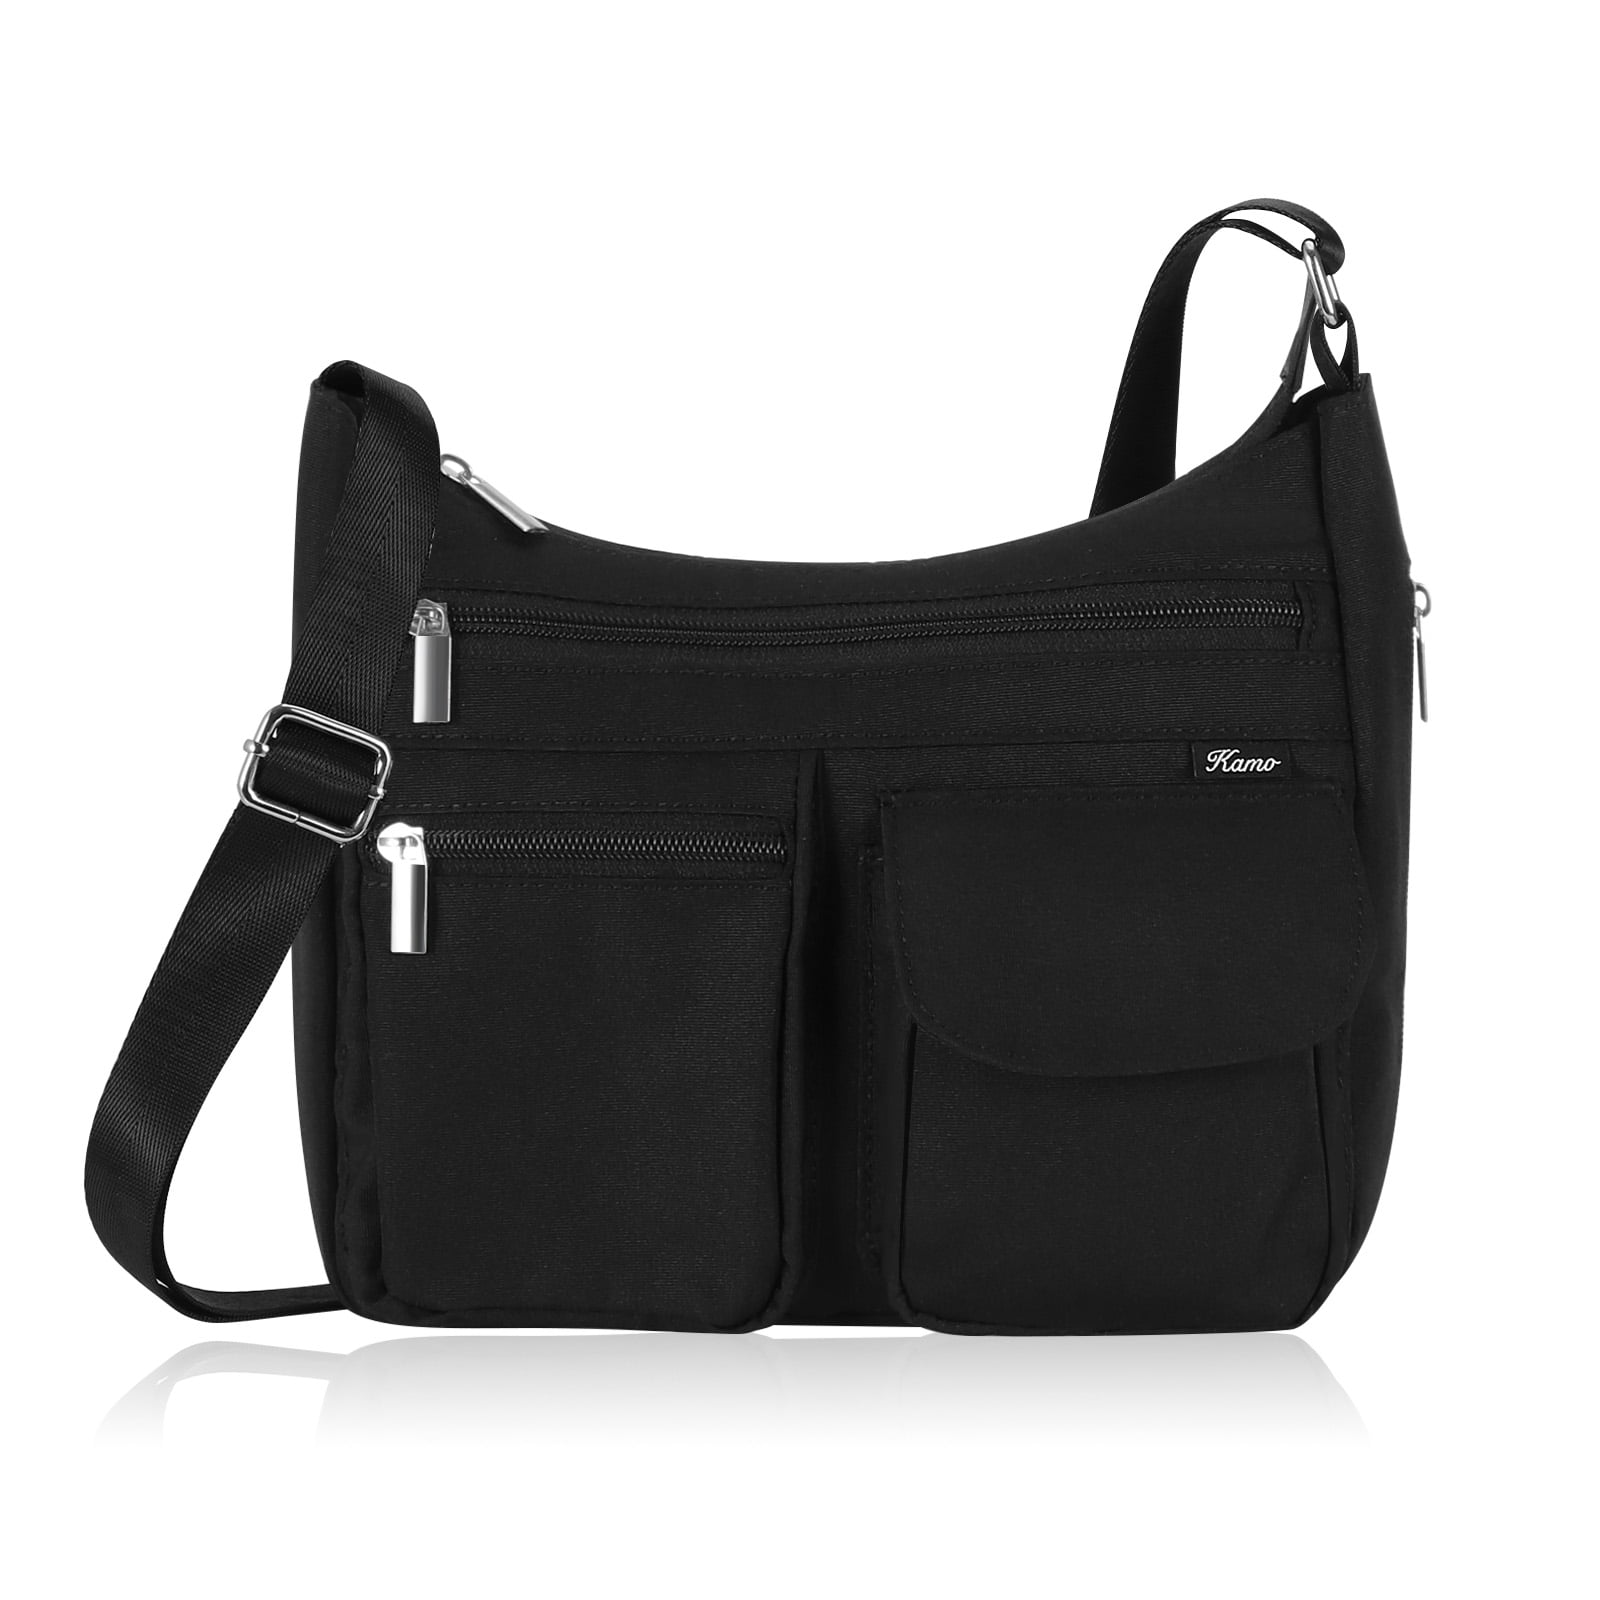 Authentic Calvin Klein Nylon Black crossbody bag, Women's Fashion